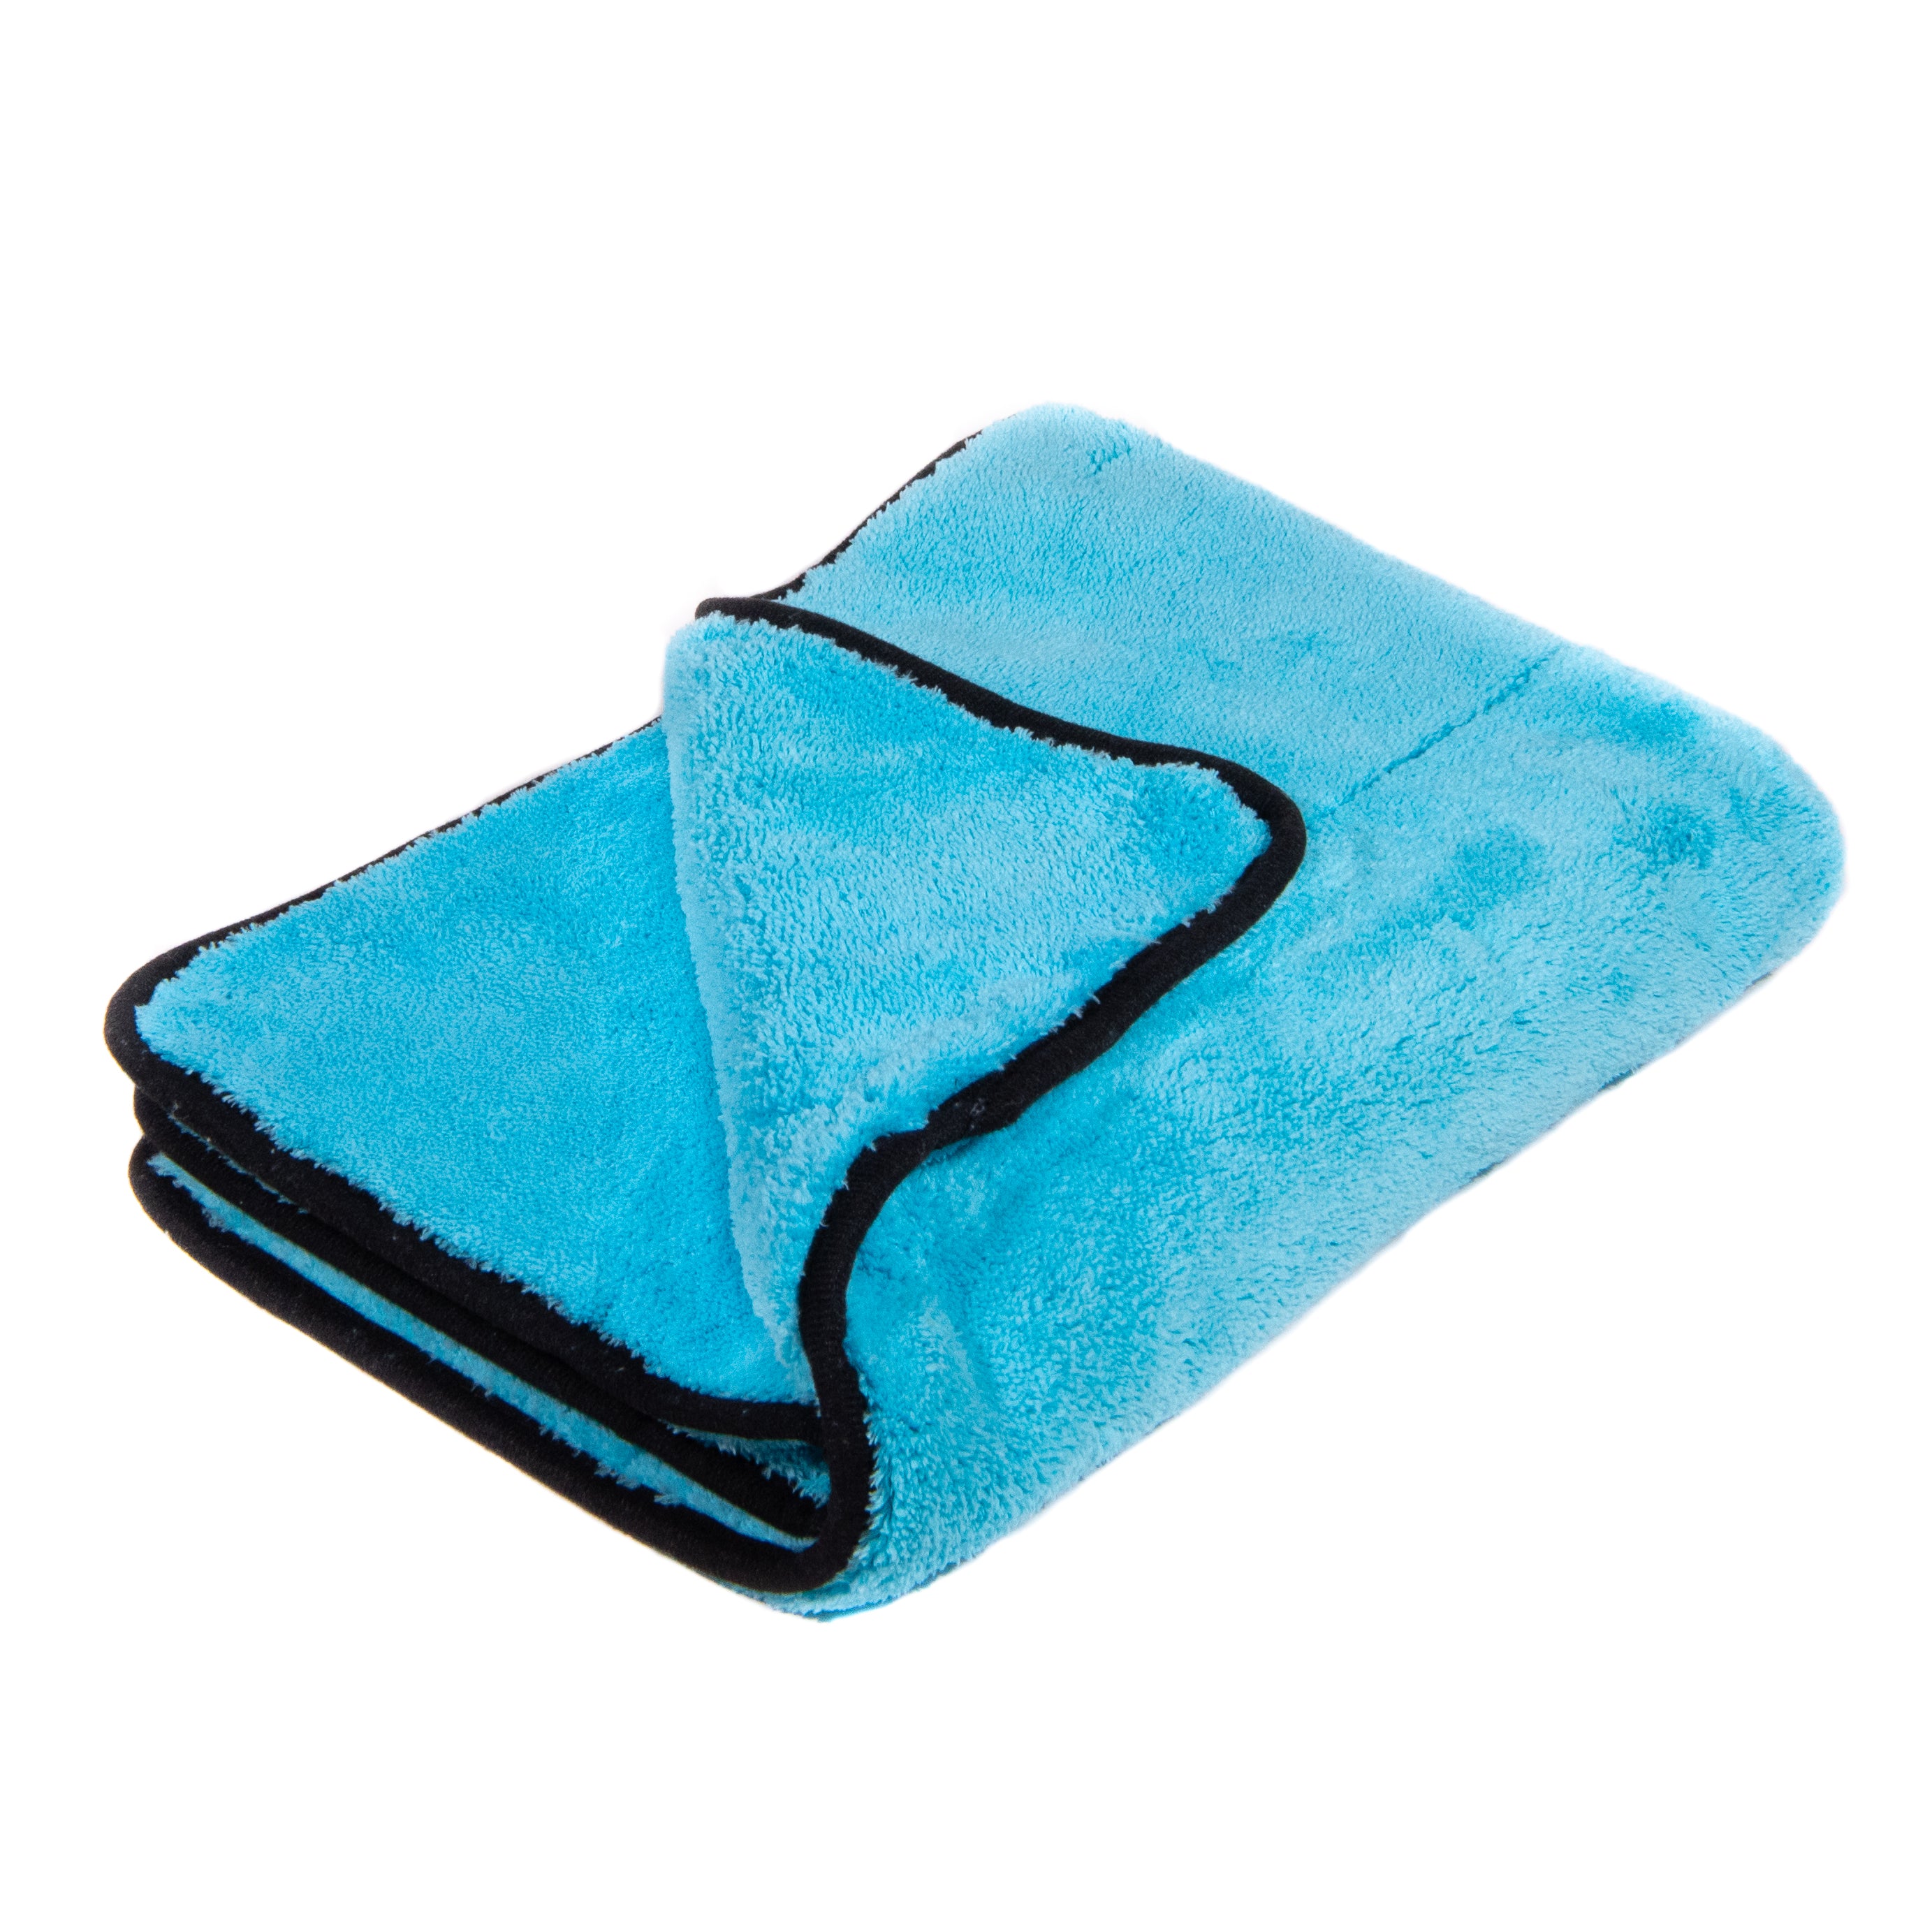 Ultra Plush Microfiber Towel - Auto-Brite